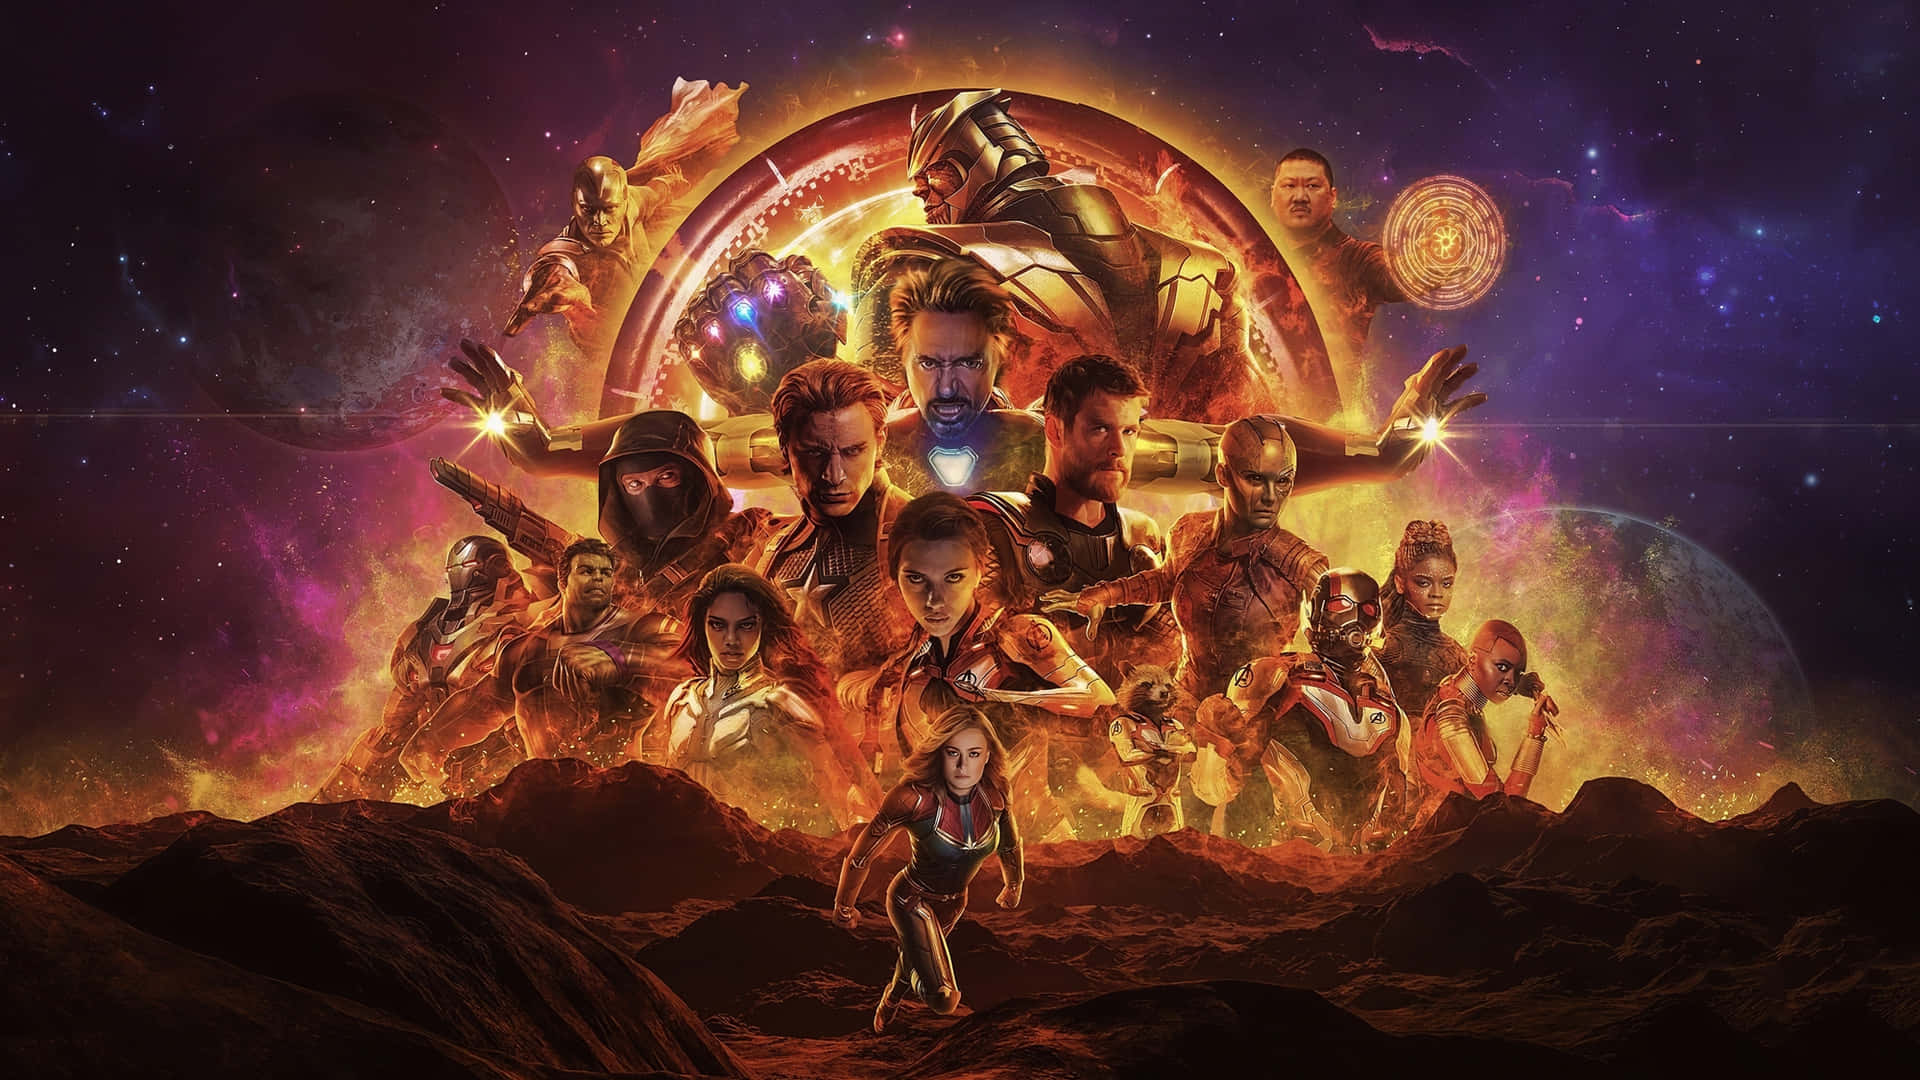 Dieavengers Schließen Sich Zusammen, Um Thanos In Avengers Endgame Zu Besiegen.